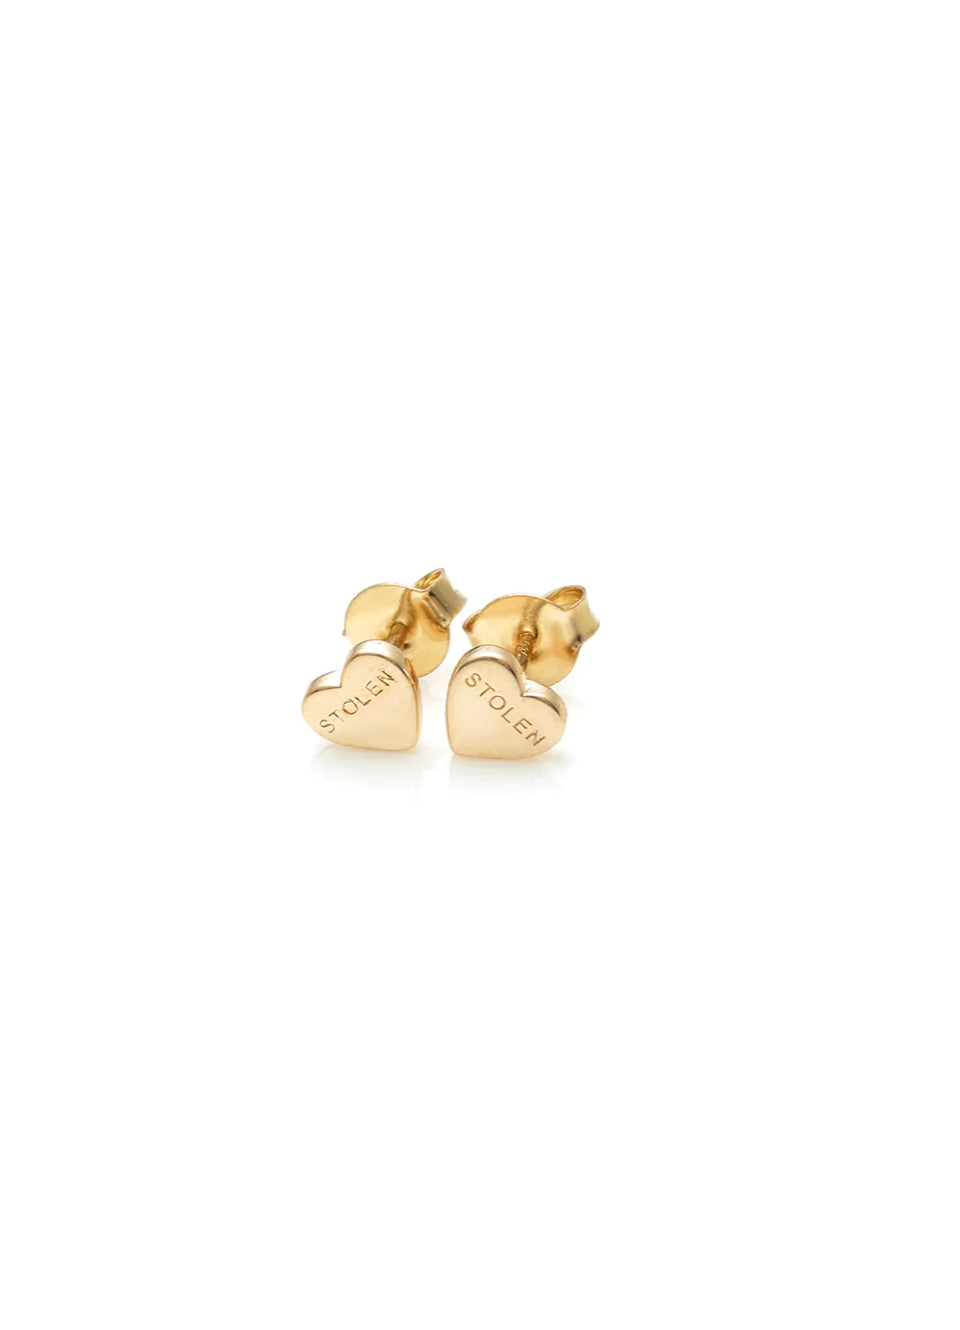 Stolen Heart Earrings | Gold Plated